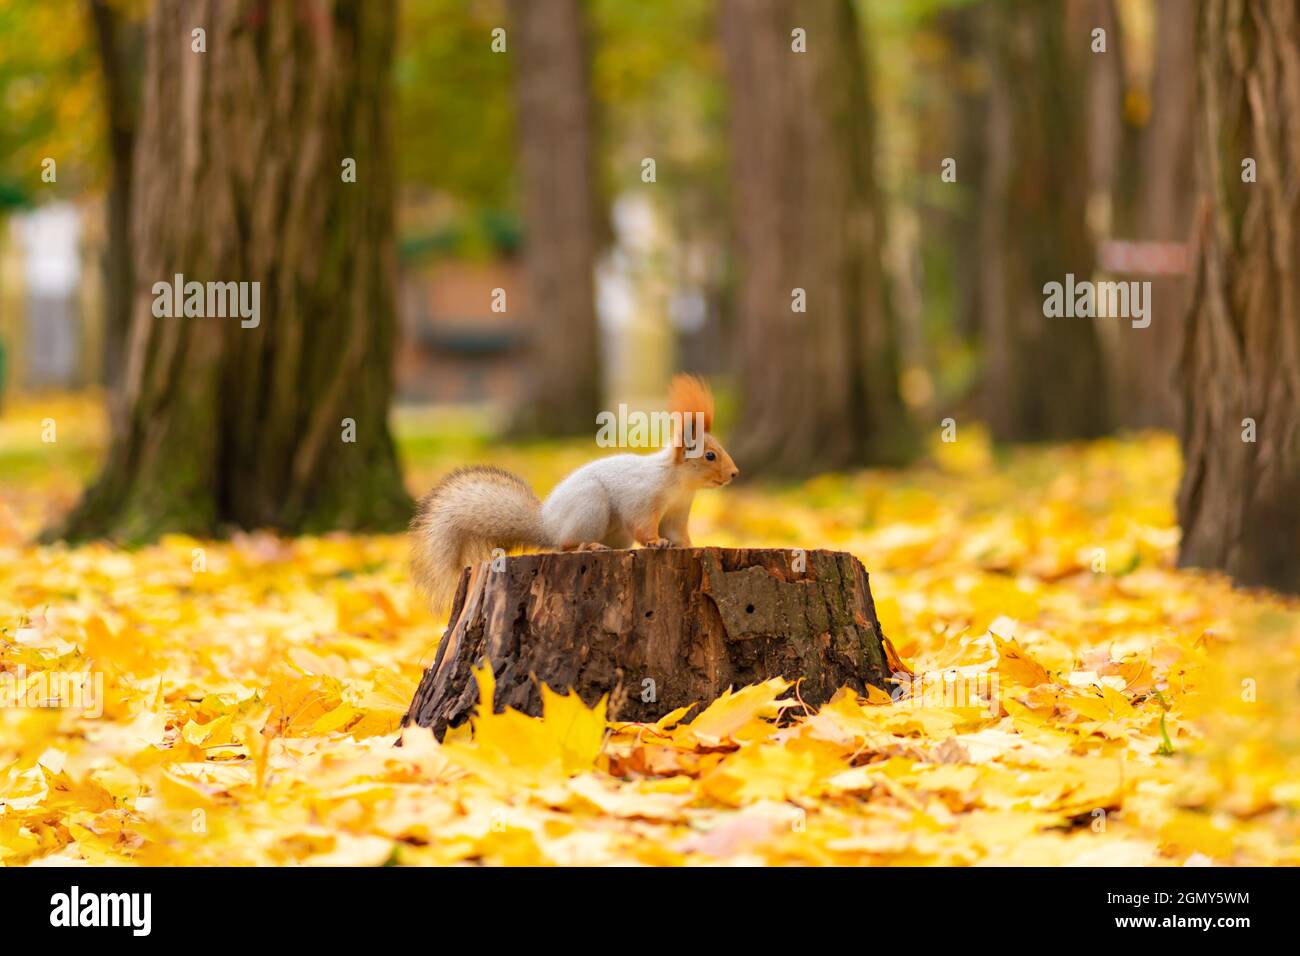 Un bel écureuil moelleux est à la recherche de nourriture parmi les feuilles jaunes tombées en automne dans un parc de la ville. Banque D'Images